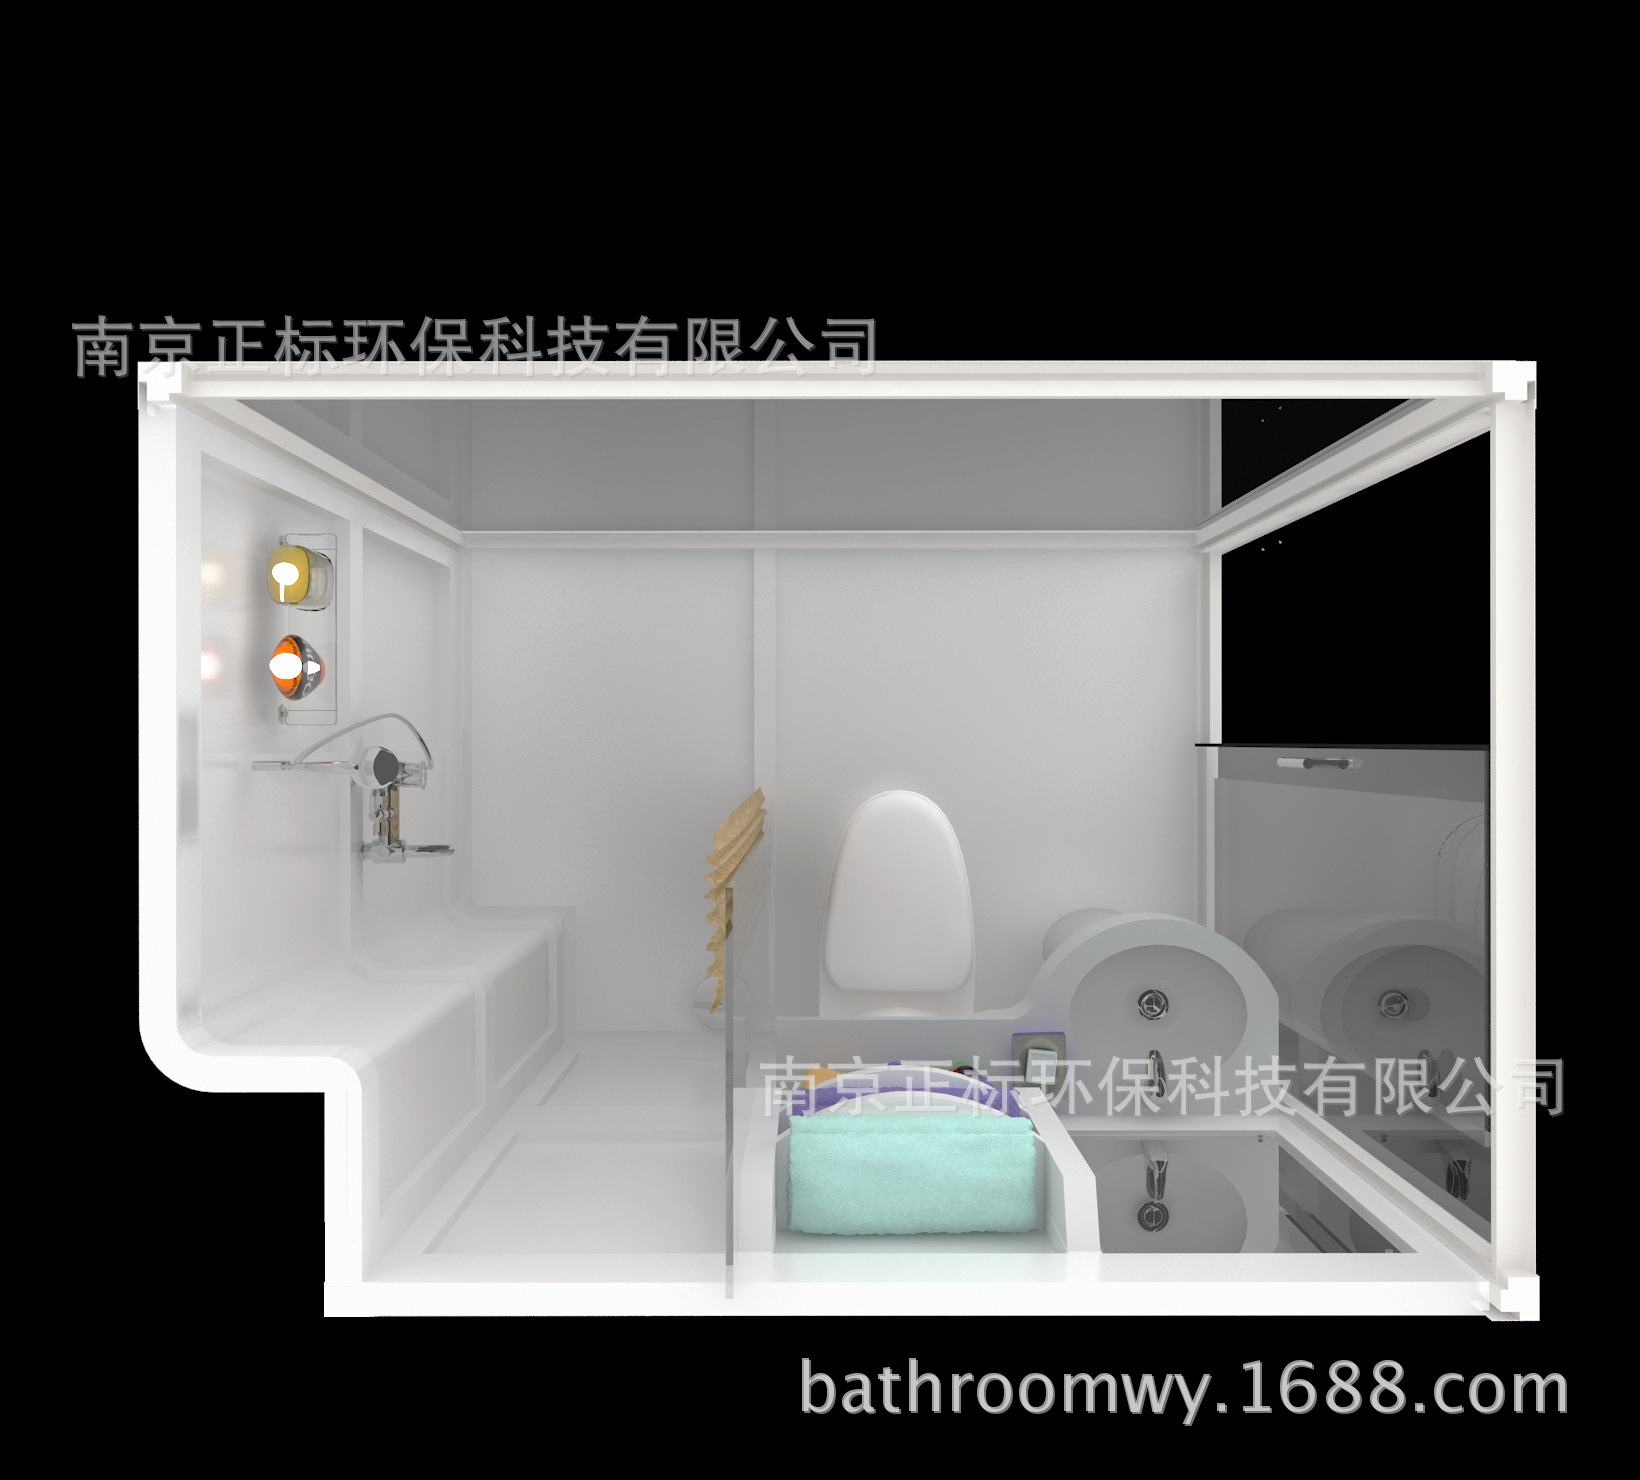 BSM1319集成卫生间宾馆酒店整体淋浴房公寓一体式卫浴厂家直销